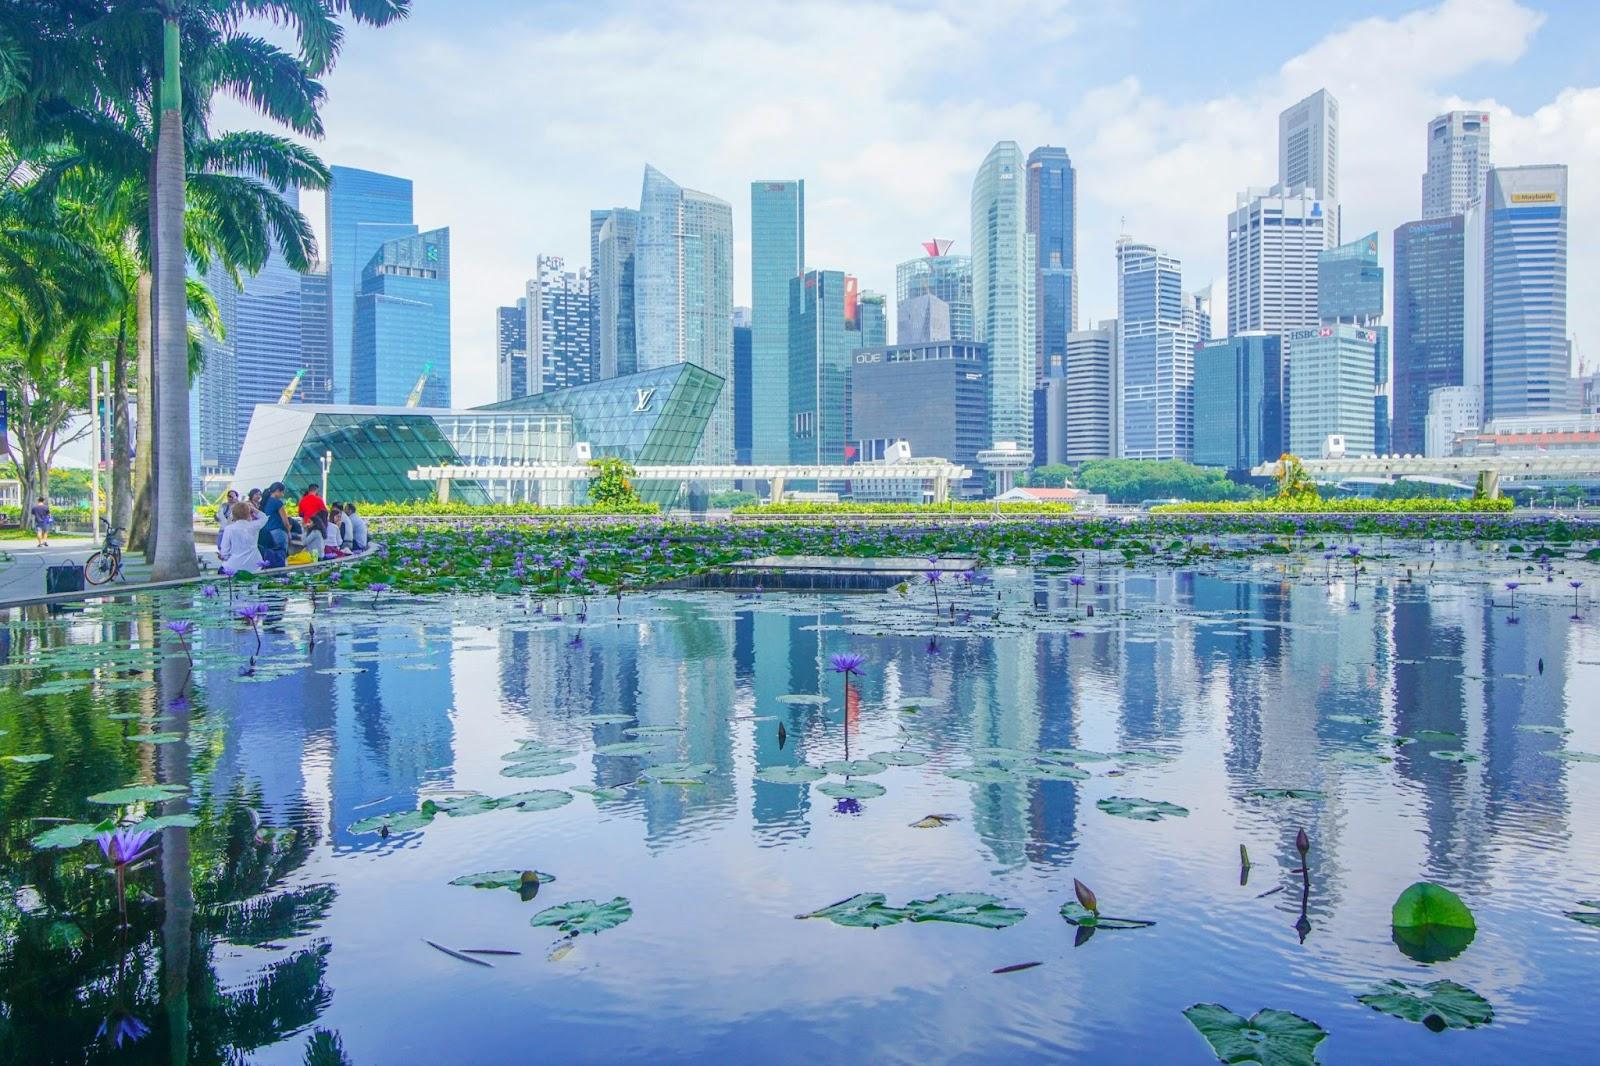 Singapore City Skyline

